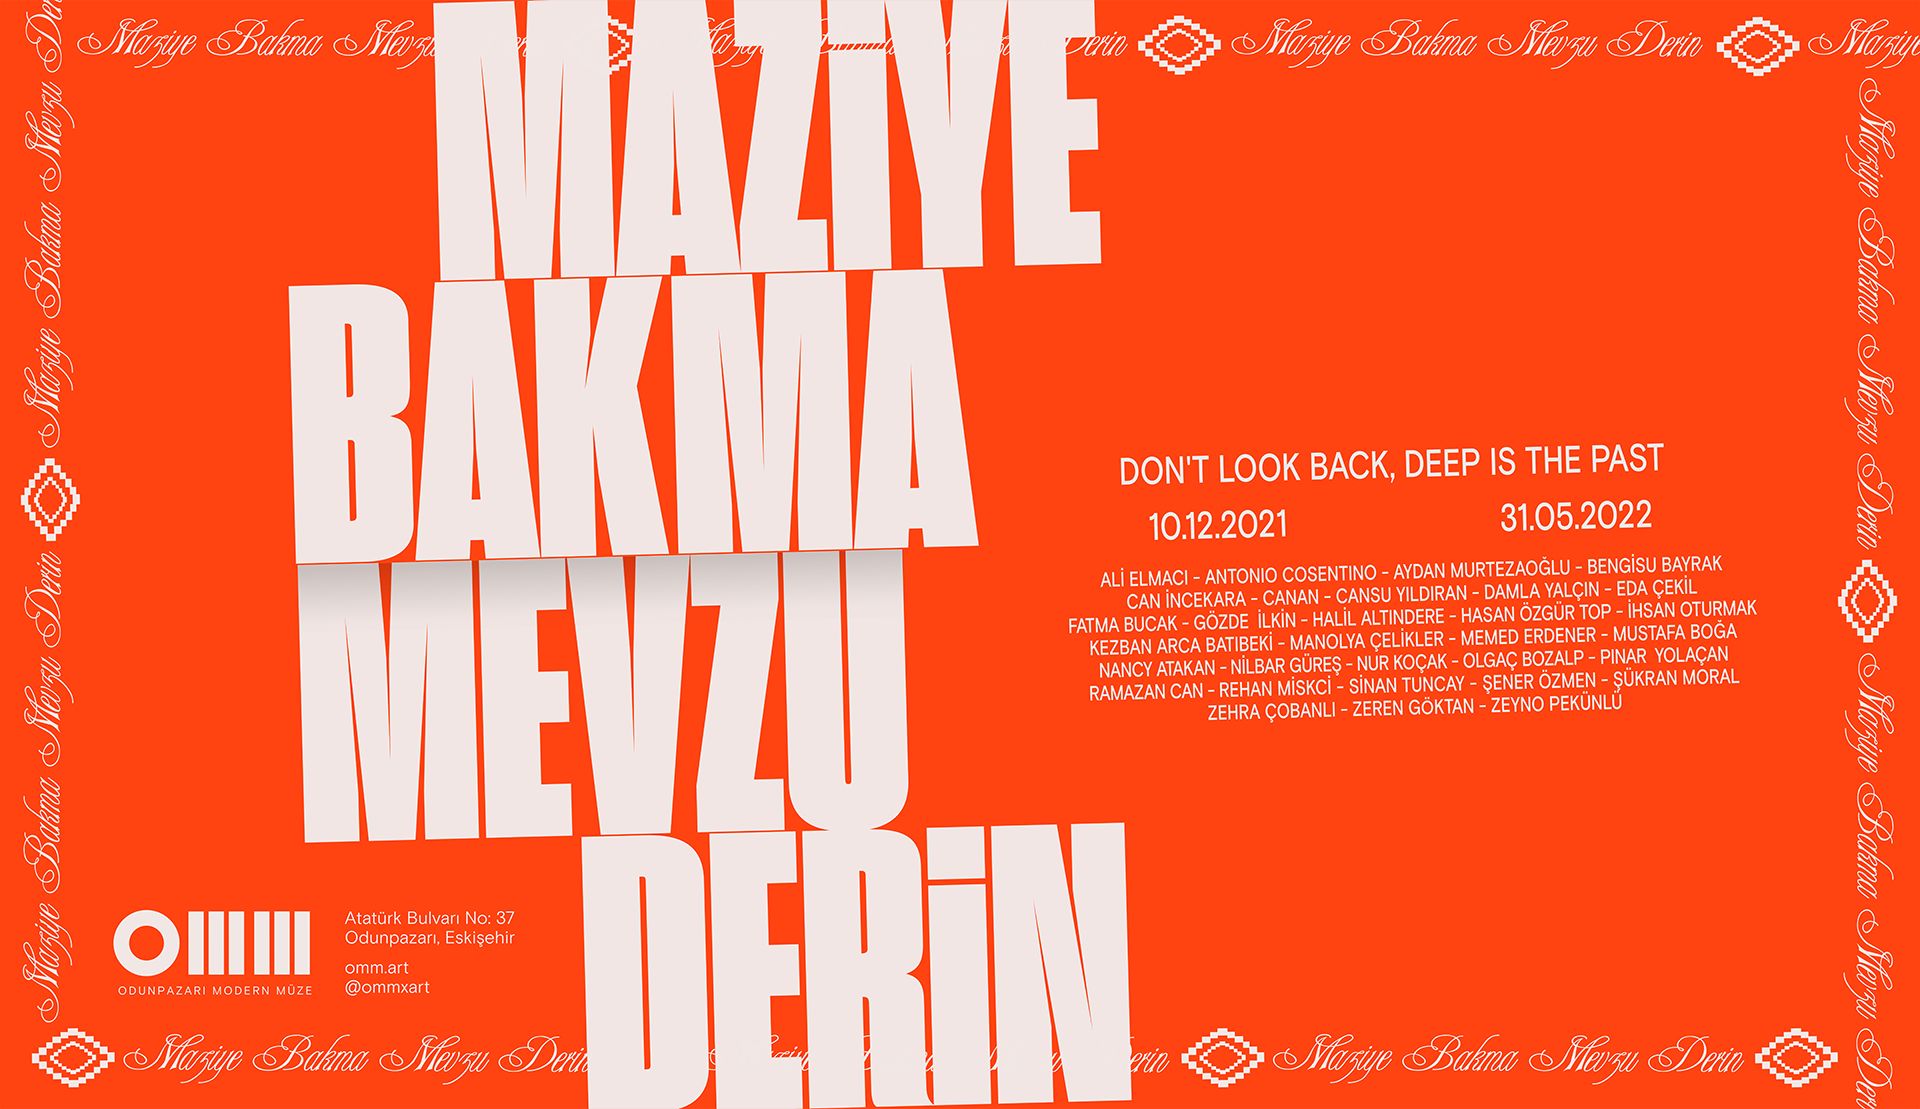 OMM - Odunpazarı Modern Müze'de 31 Mayıs 2022 tarihine kadar sürecek “Maziye Bakma Mevzu Derin” sergisinin afişi.